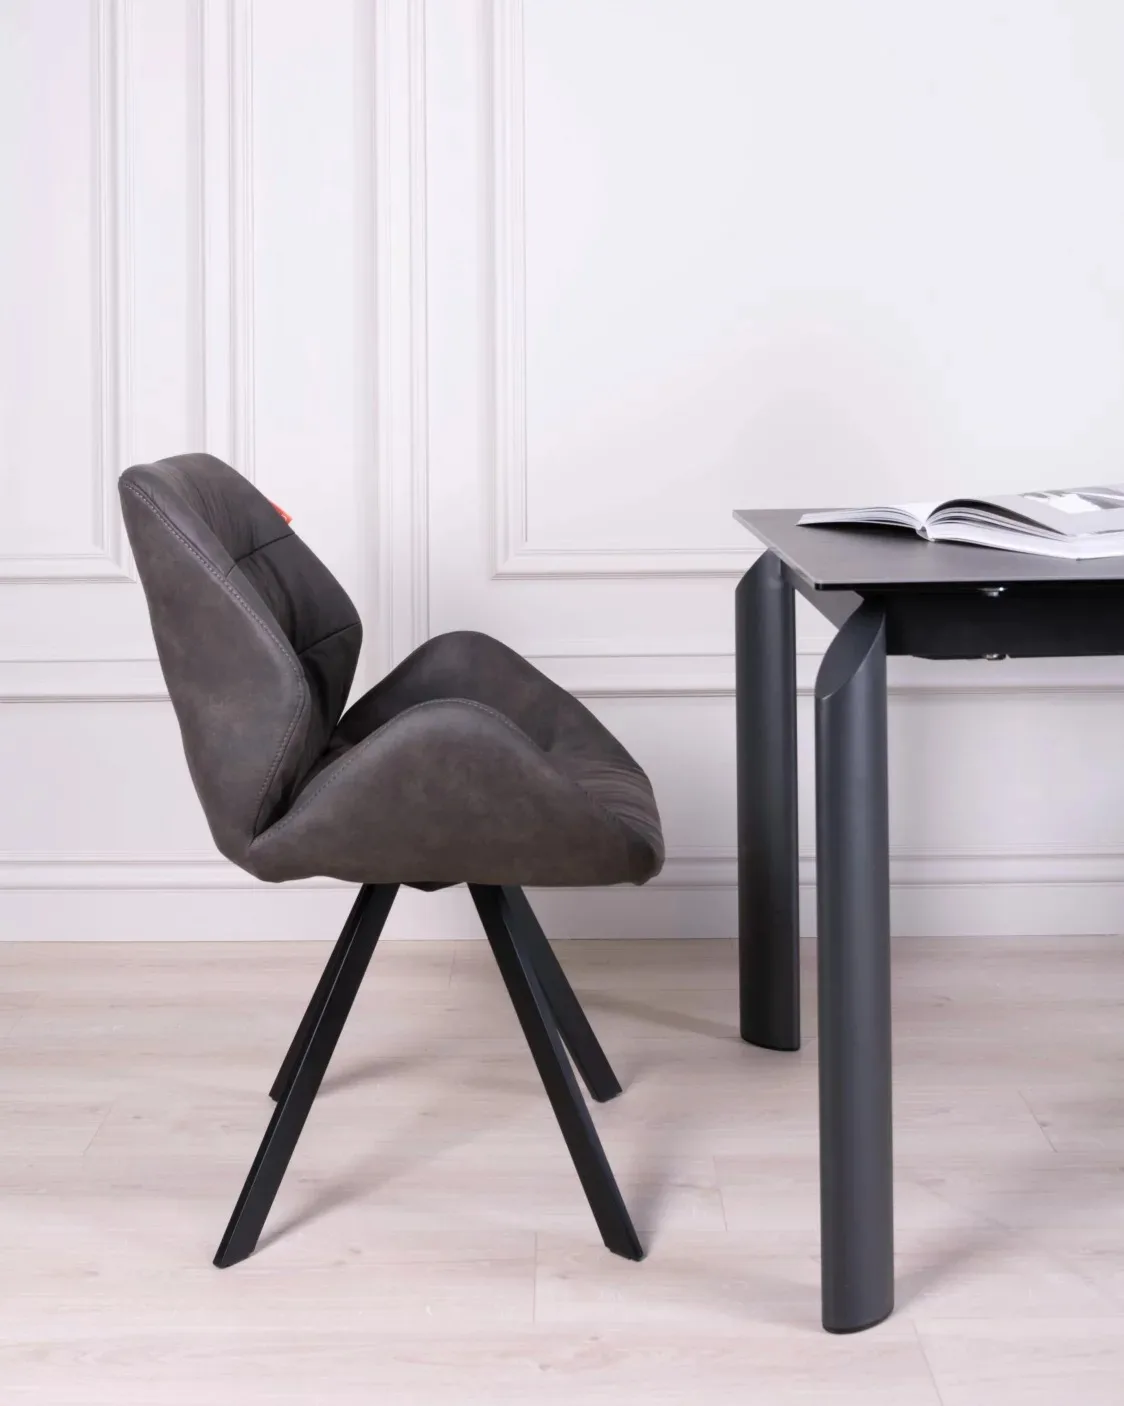 Master Design Hotel Luxury Dining Room Furniture Modern Italian Style Upholstery Factory Fabric Velvet Upholstered Chair